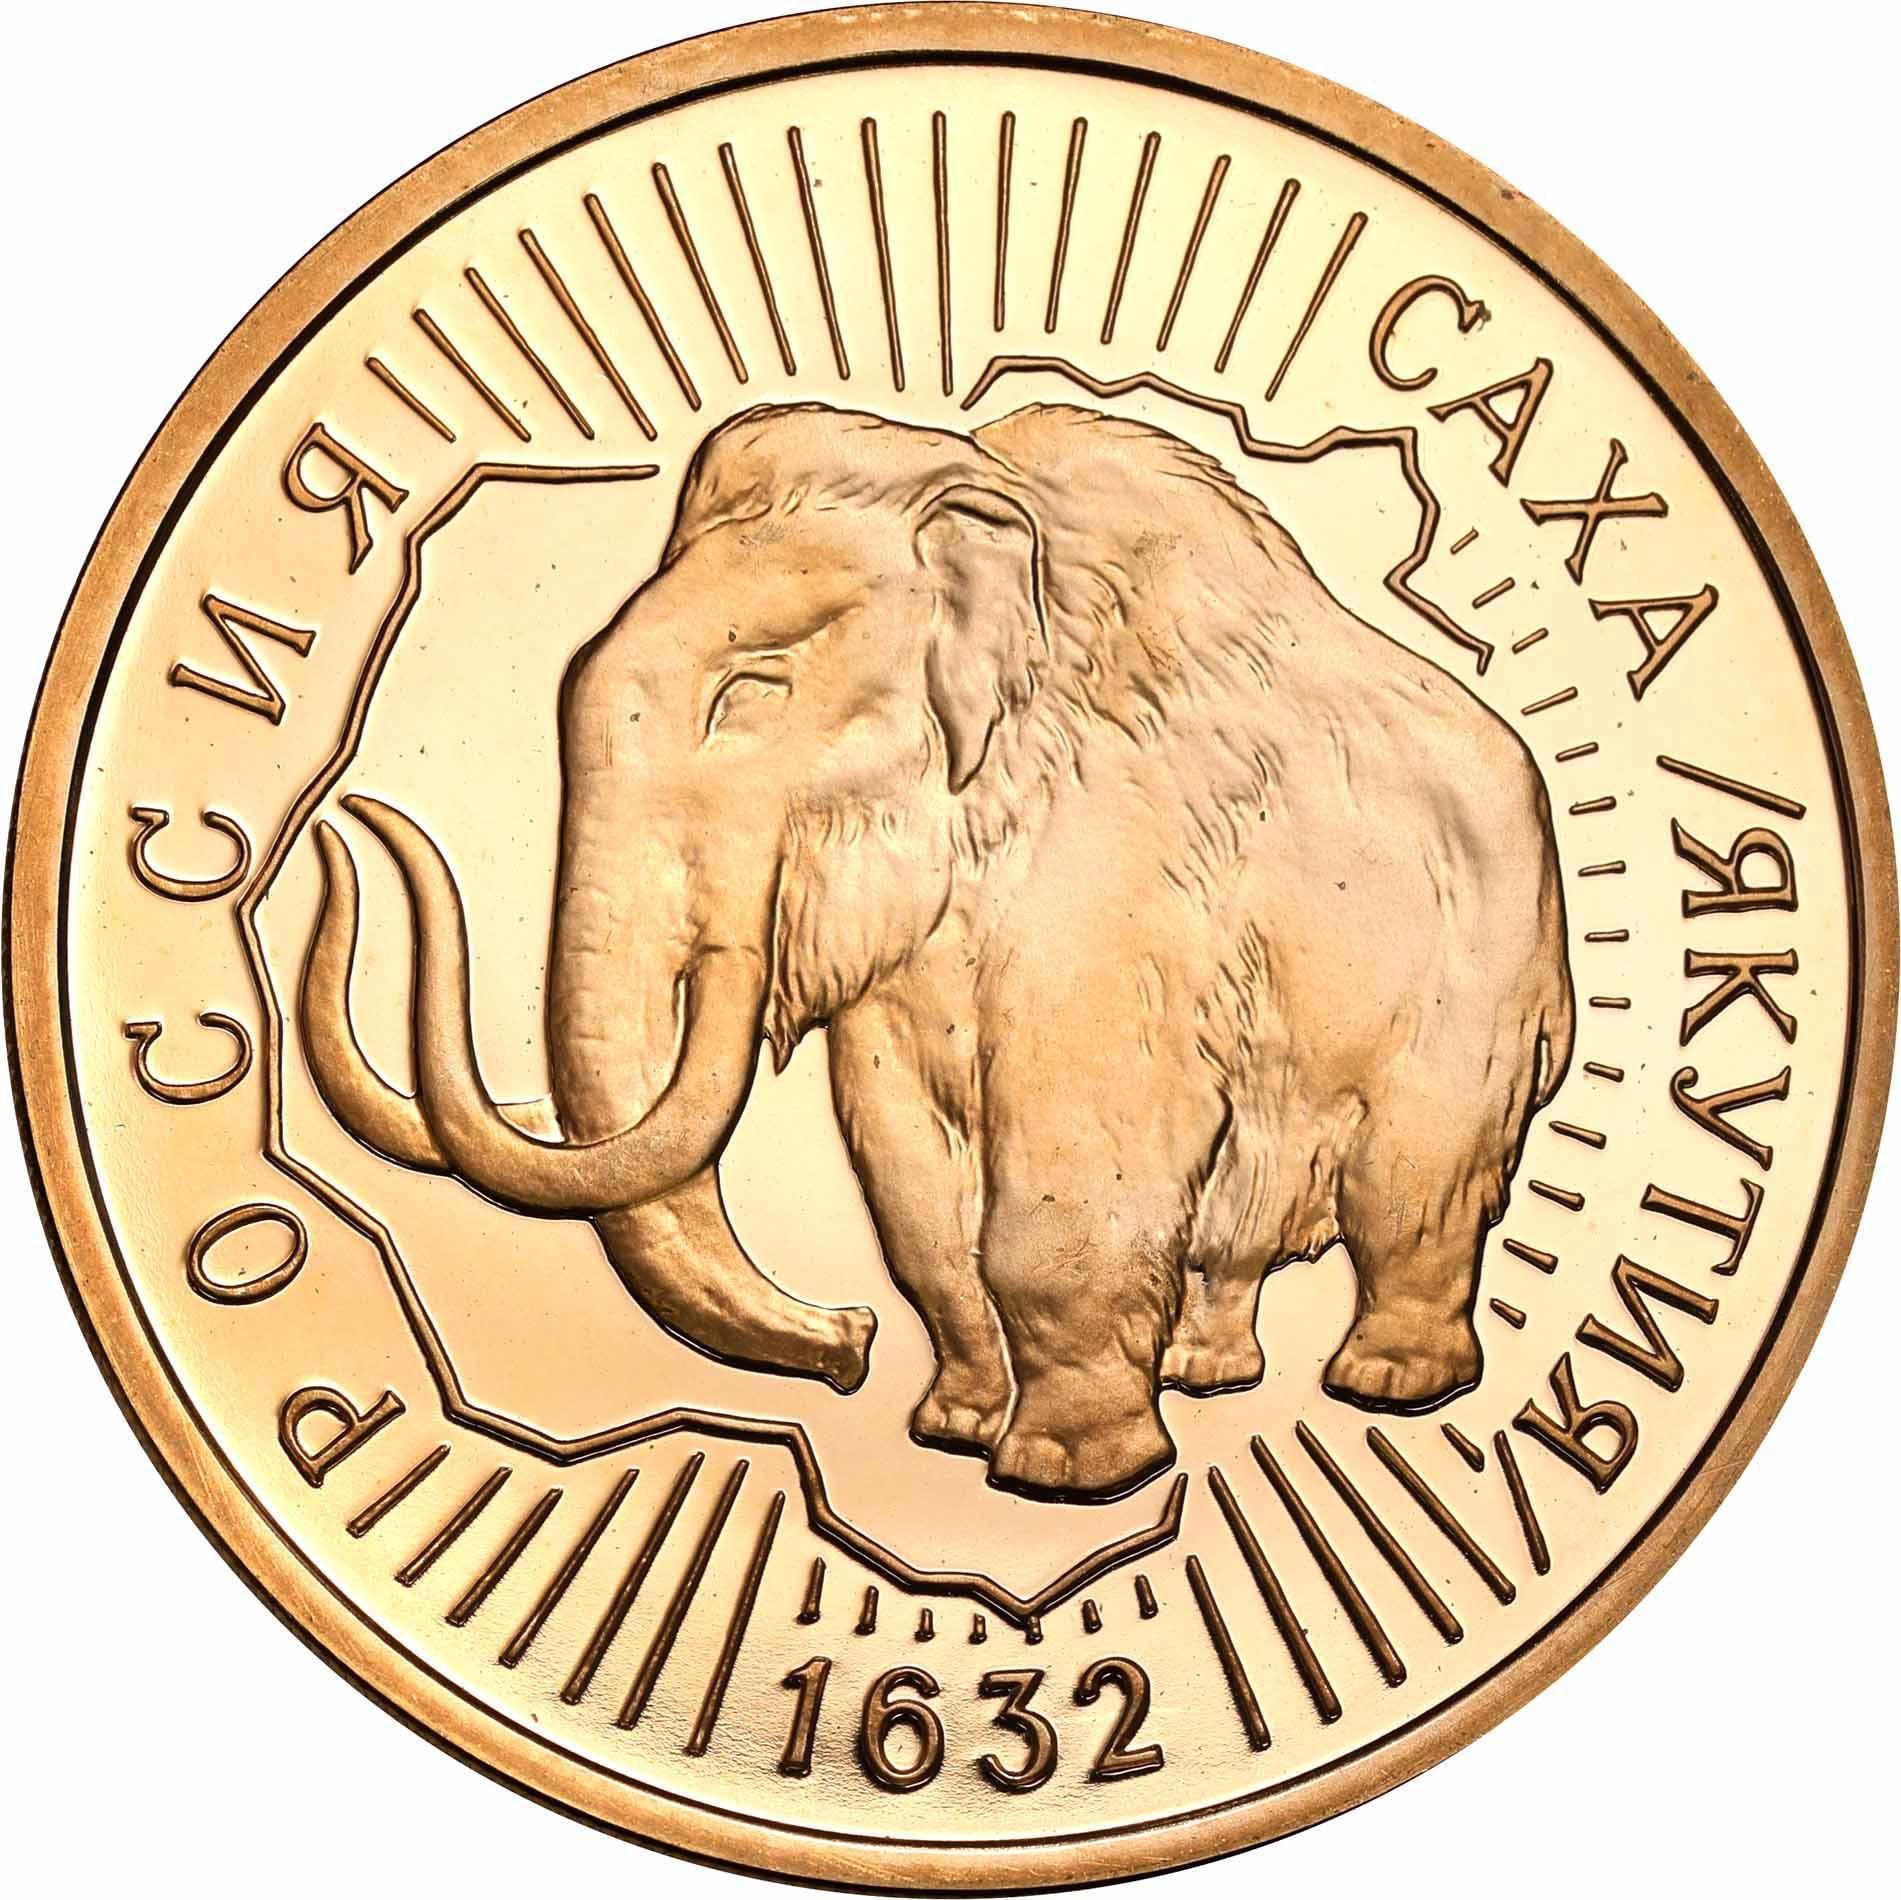 Rosja. 100 Rubli 1992 wejście Jakucji w skład Rosji - 1/2 uncji złota